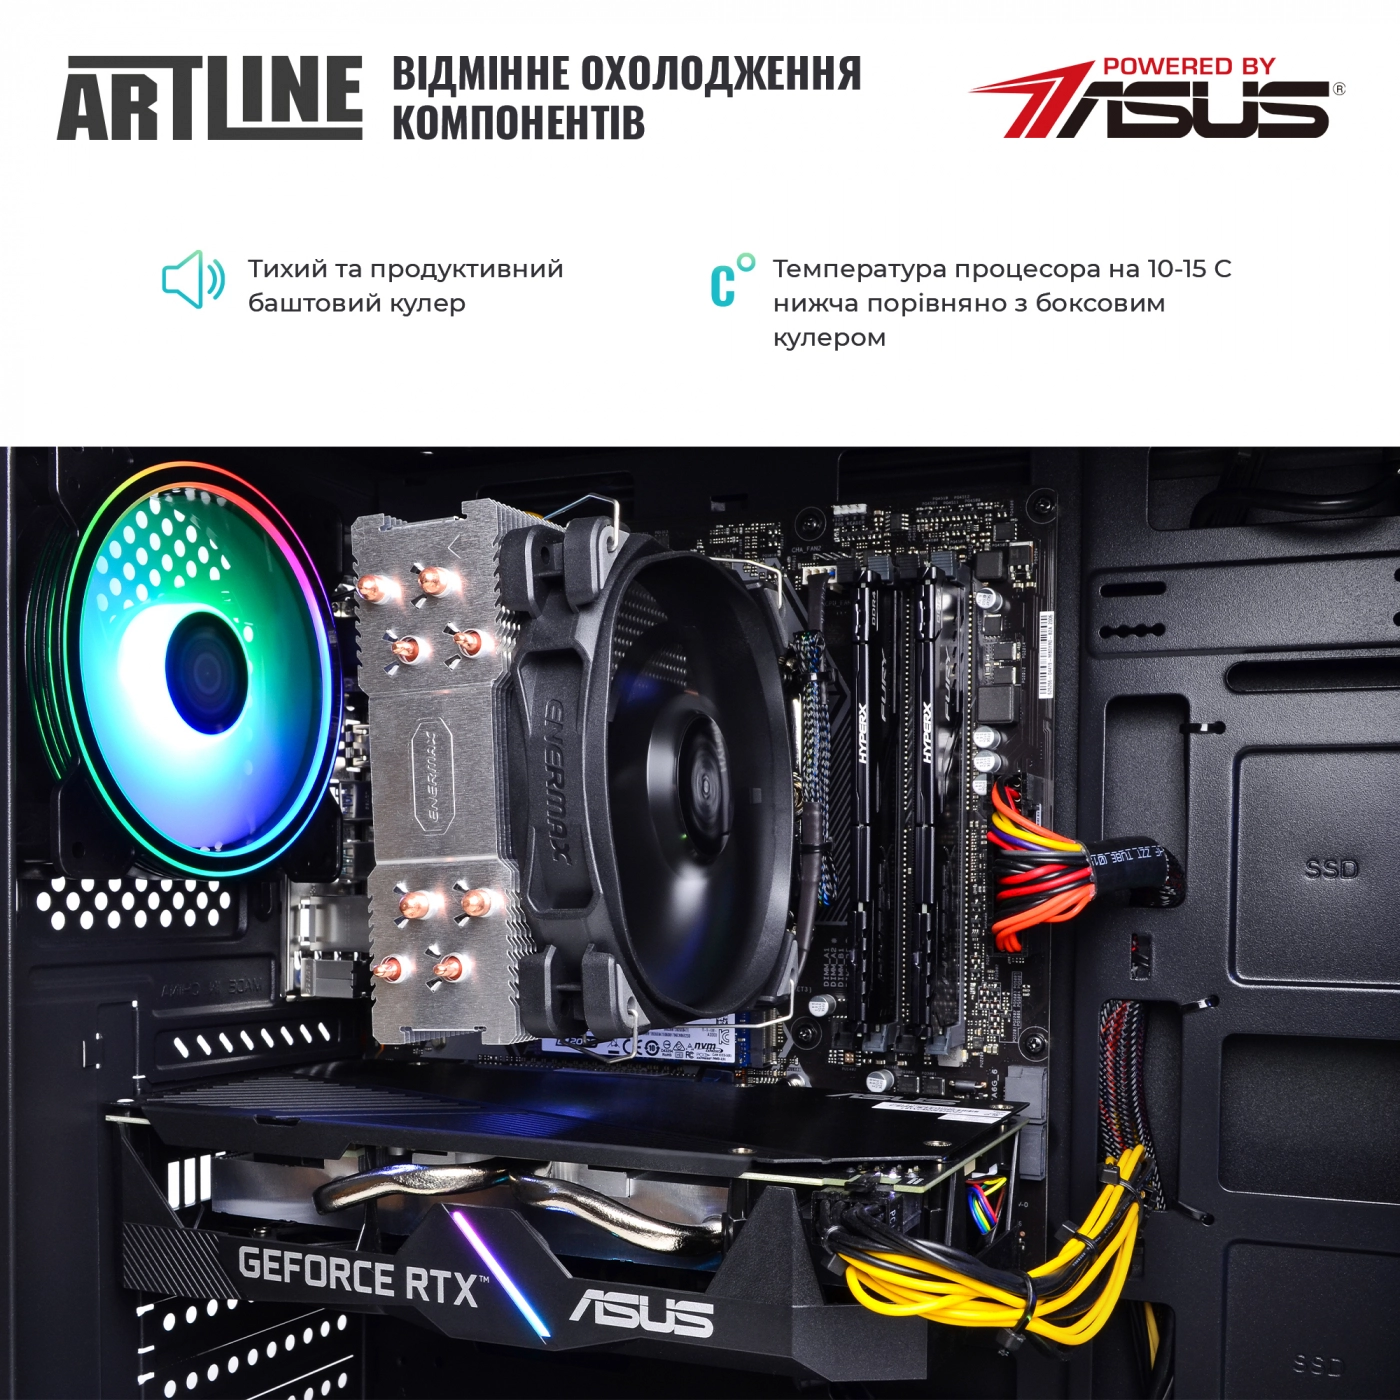 Купить Компьютер ARTLINE Gaming X56v23 - фото 6